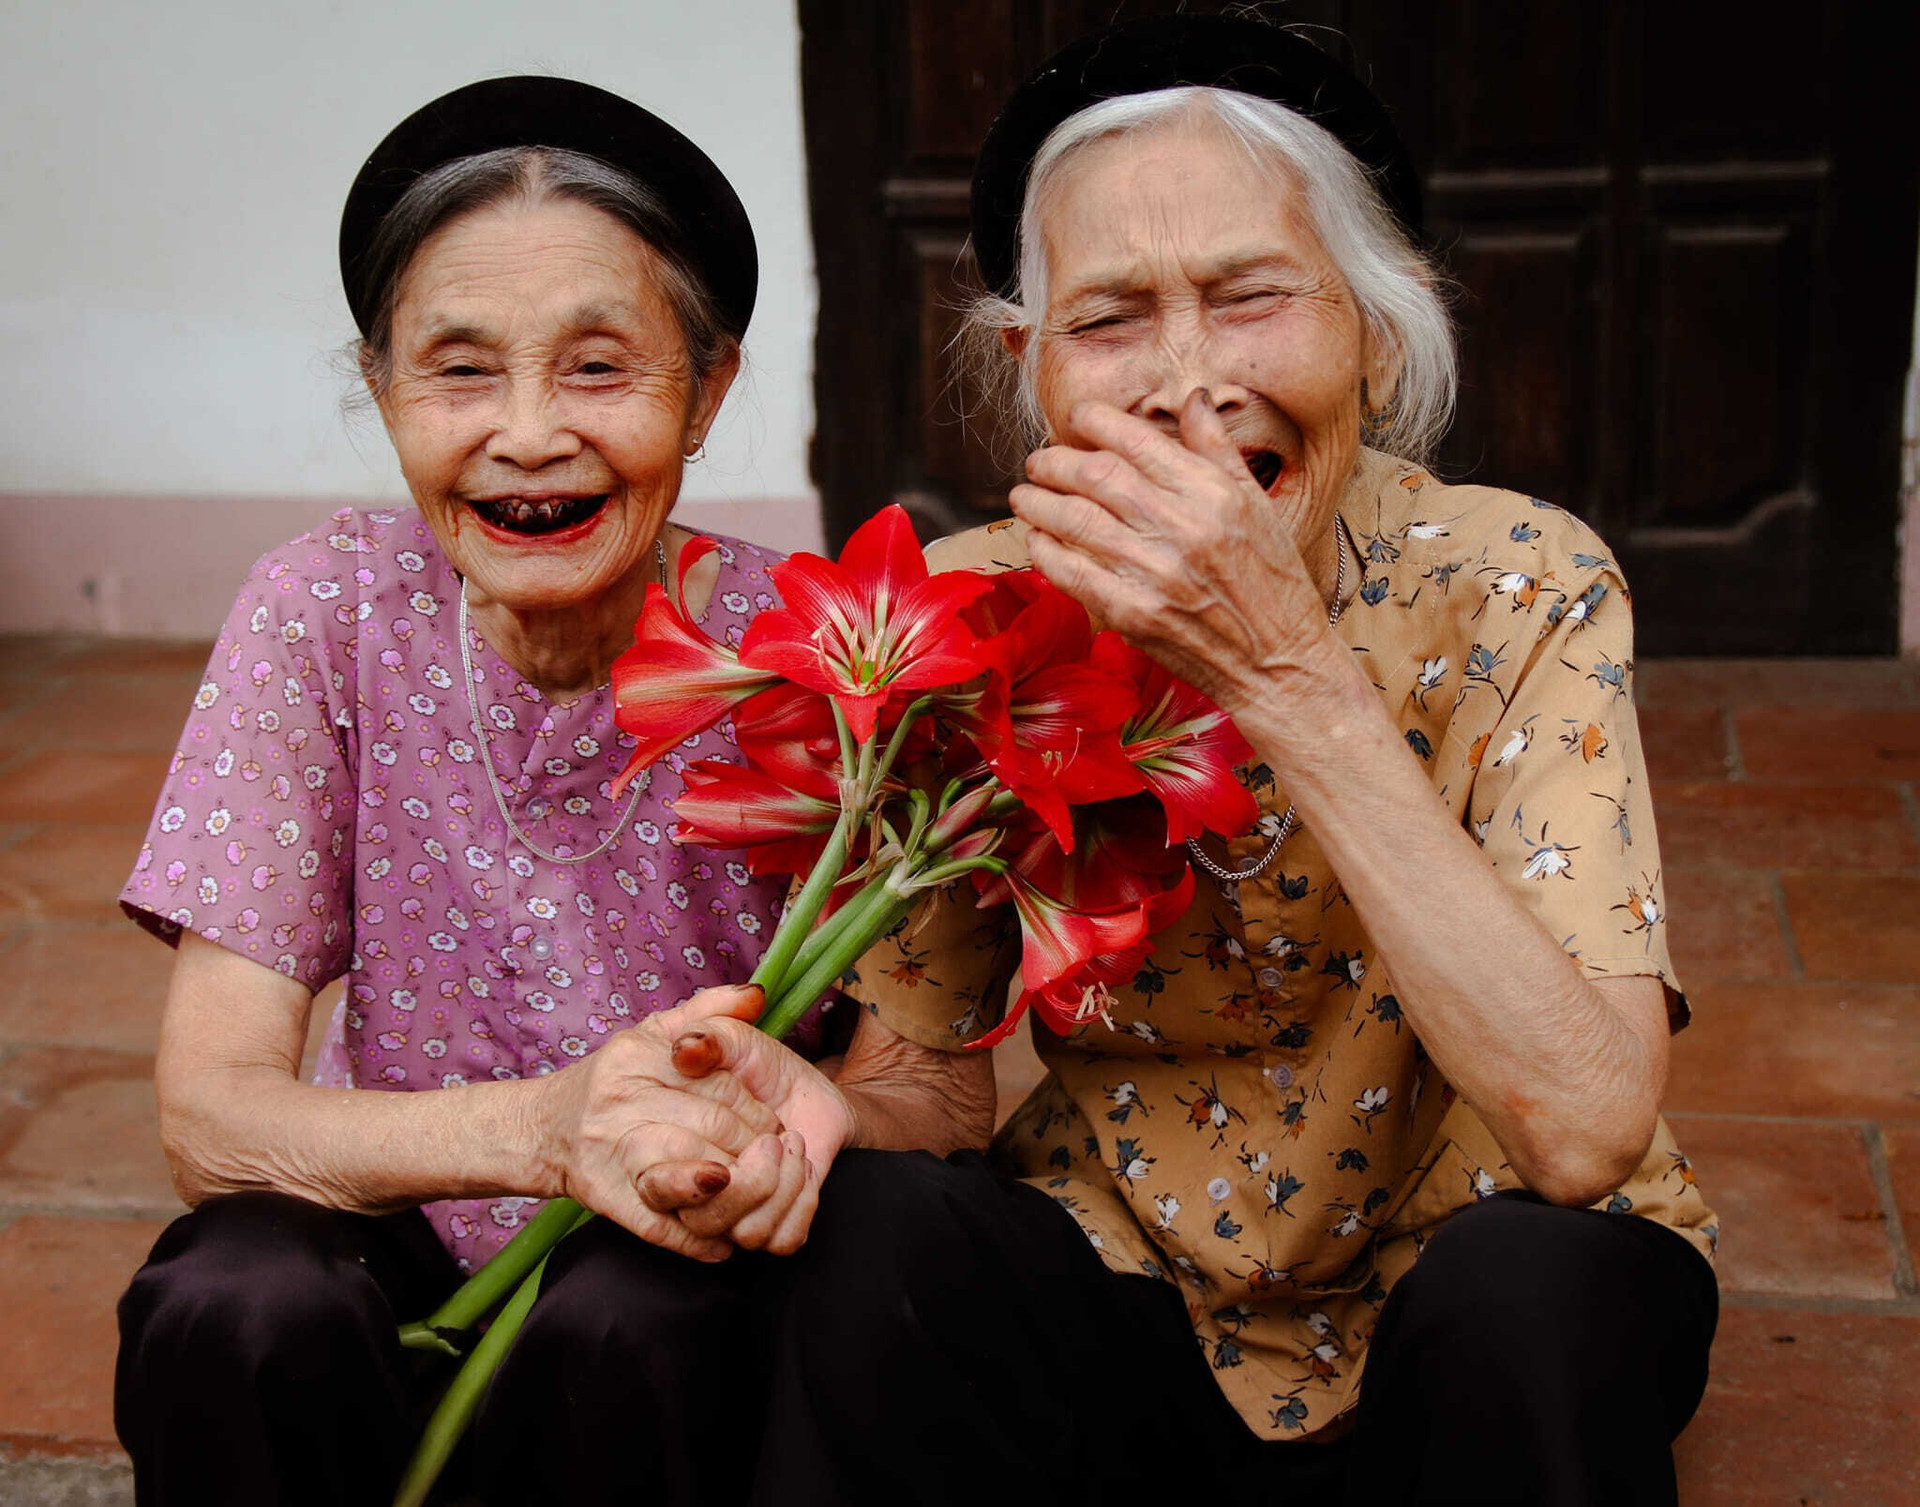 Nụ cười hồn nhiên chính là bí quyết giúp các cụ sống vui khoẻ mỗi ngày. (Ảnh: NVCC)